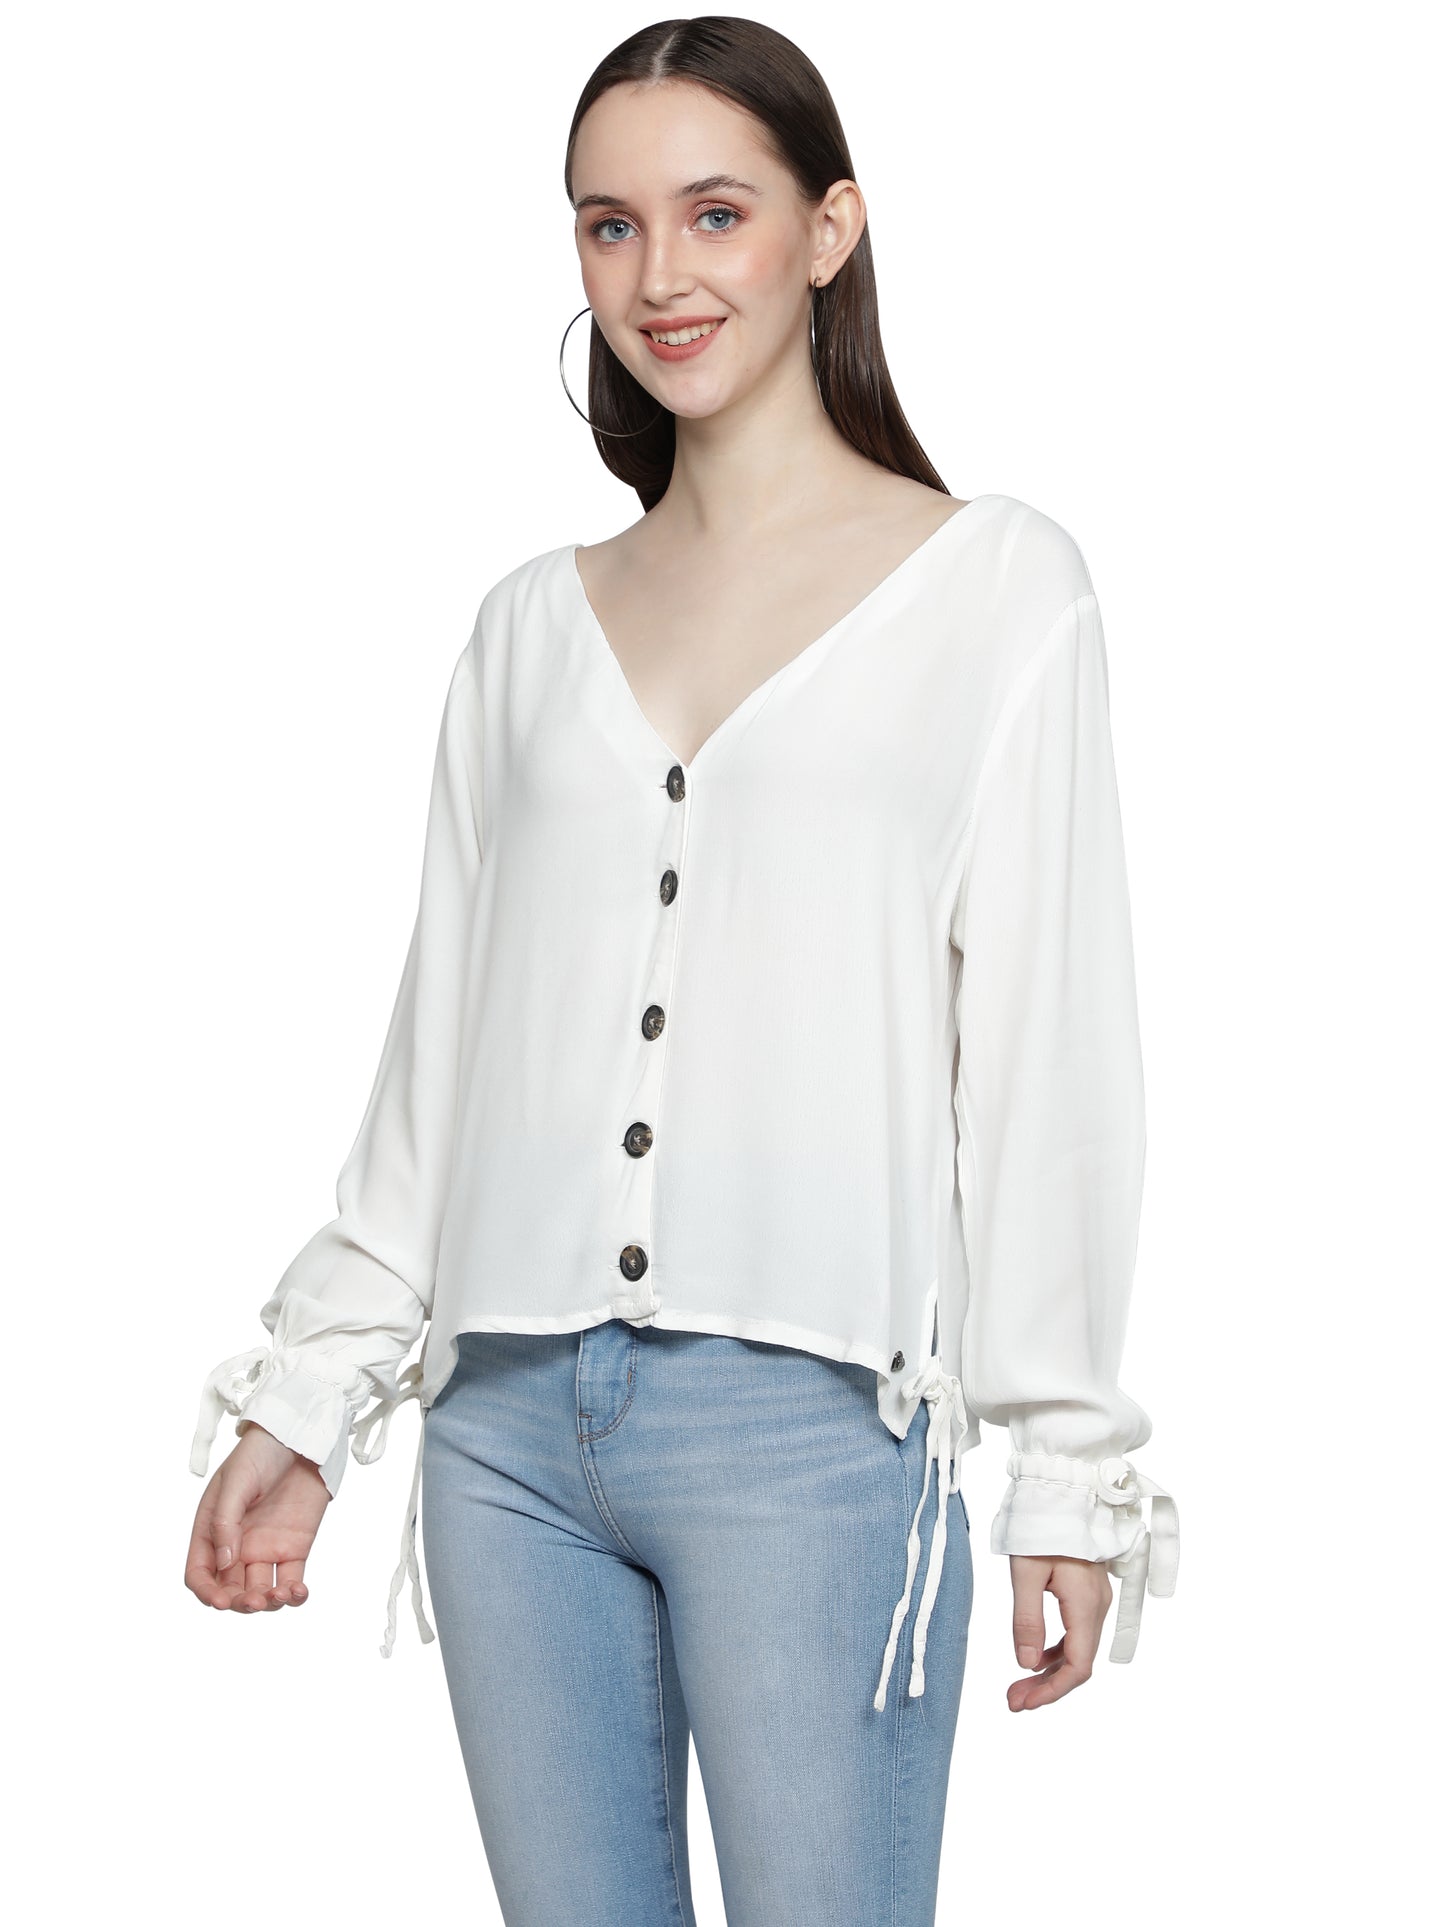 NUEVOSDAMAS Women Rayon Solid White Shirt Top